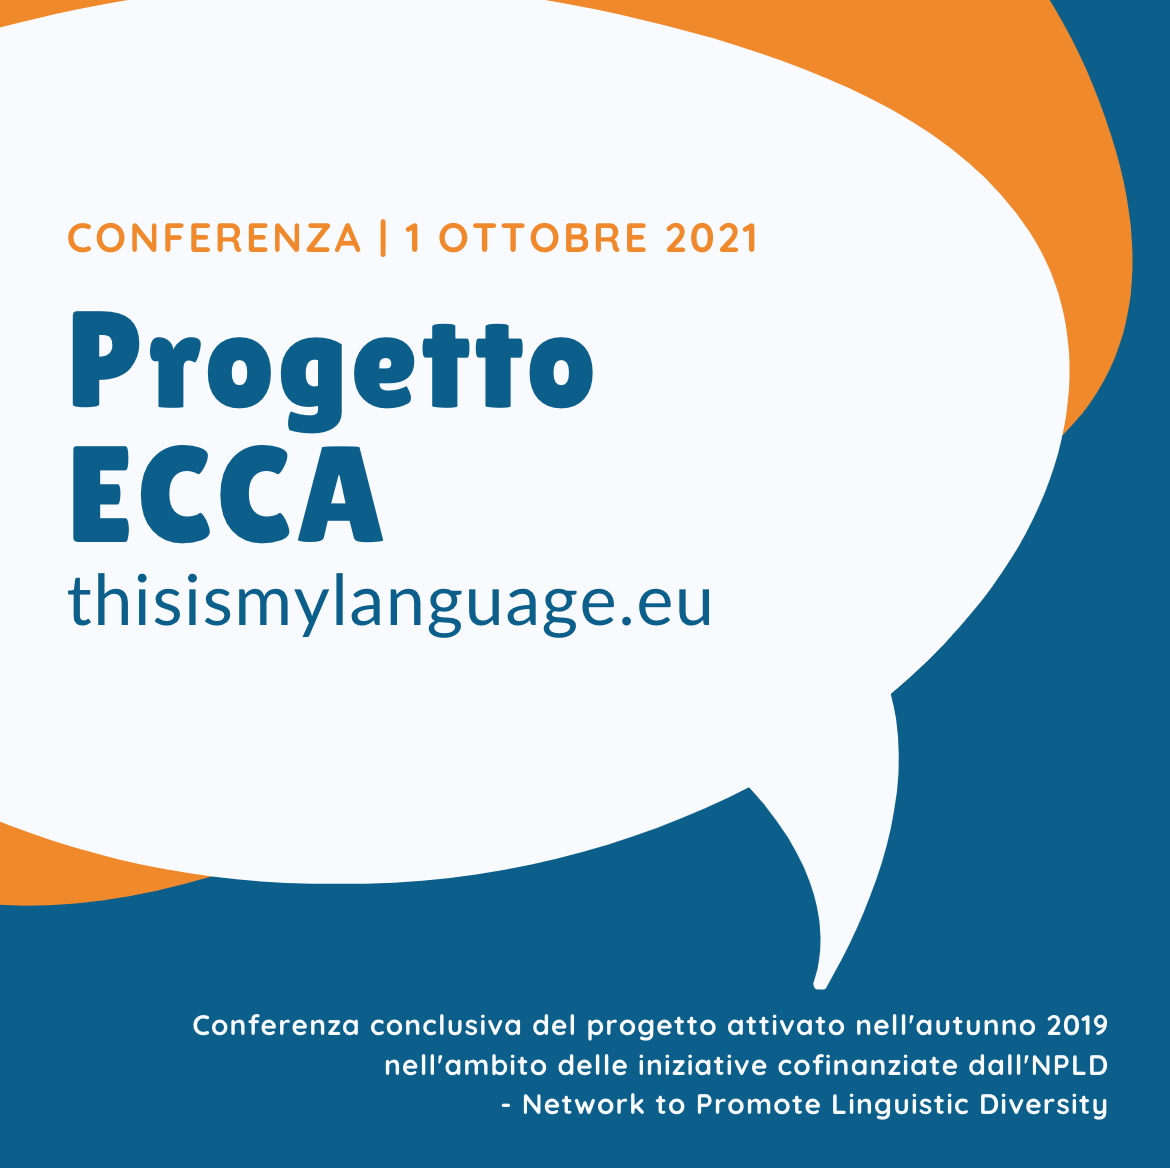 Conferenza finale | Progetto ECCA-European Charter Classroom Activities, avviato nell'autunno 2019 nell'ambito delle iniziative cofinanziate dall'NPLD- Network to Promote Linguistic Diversity, rete europea che opera nel campo della politica linguistica